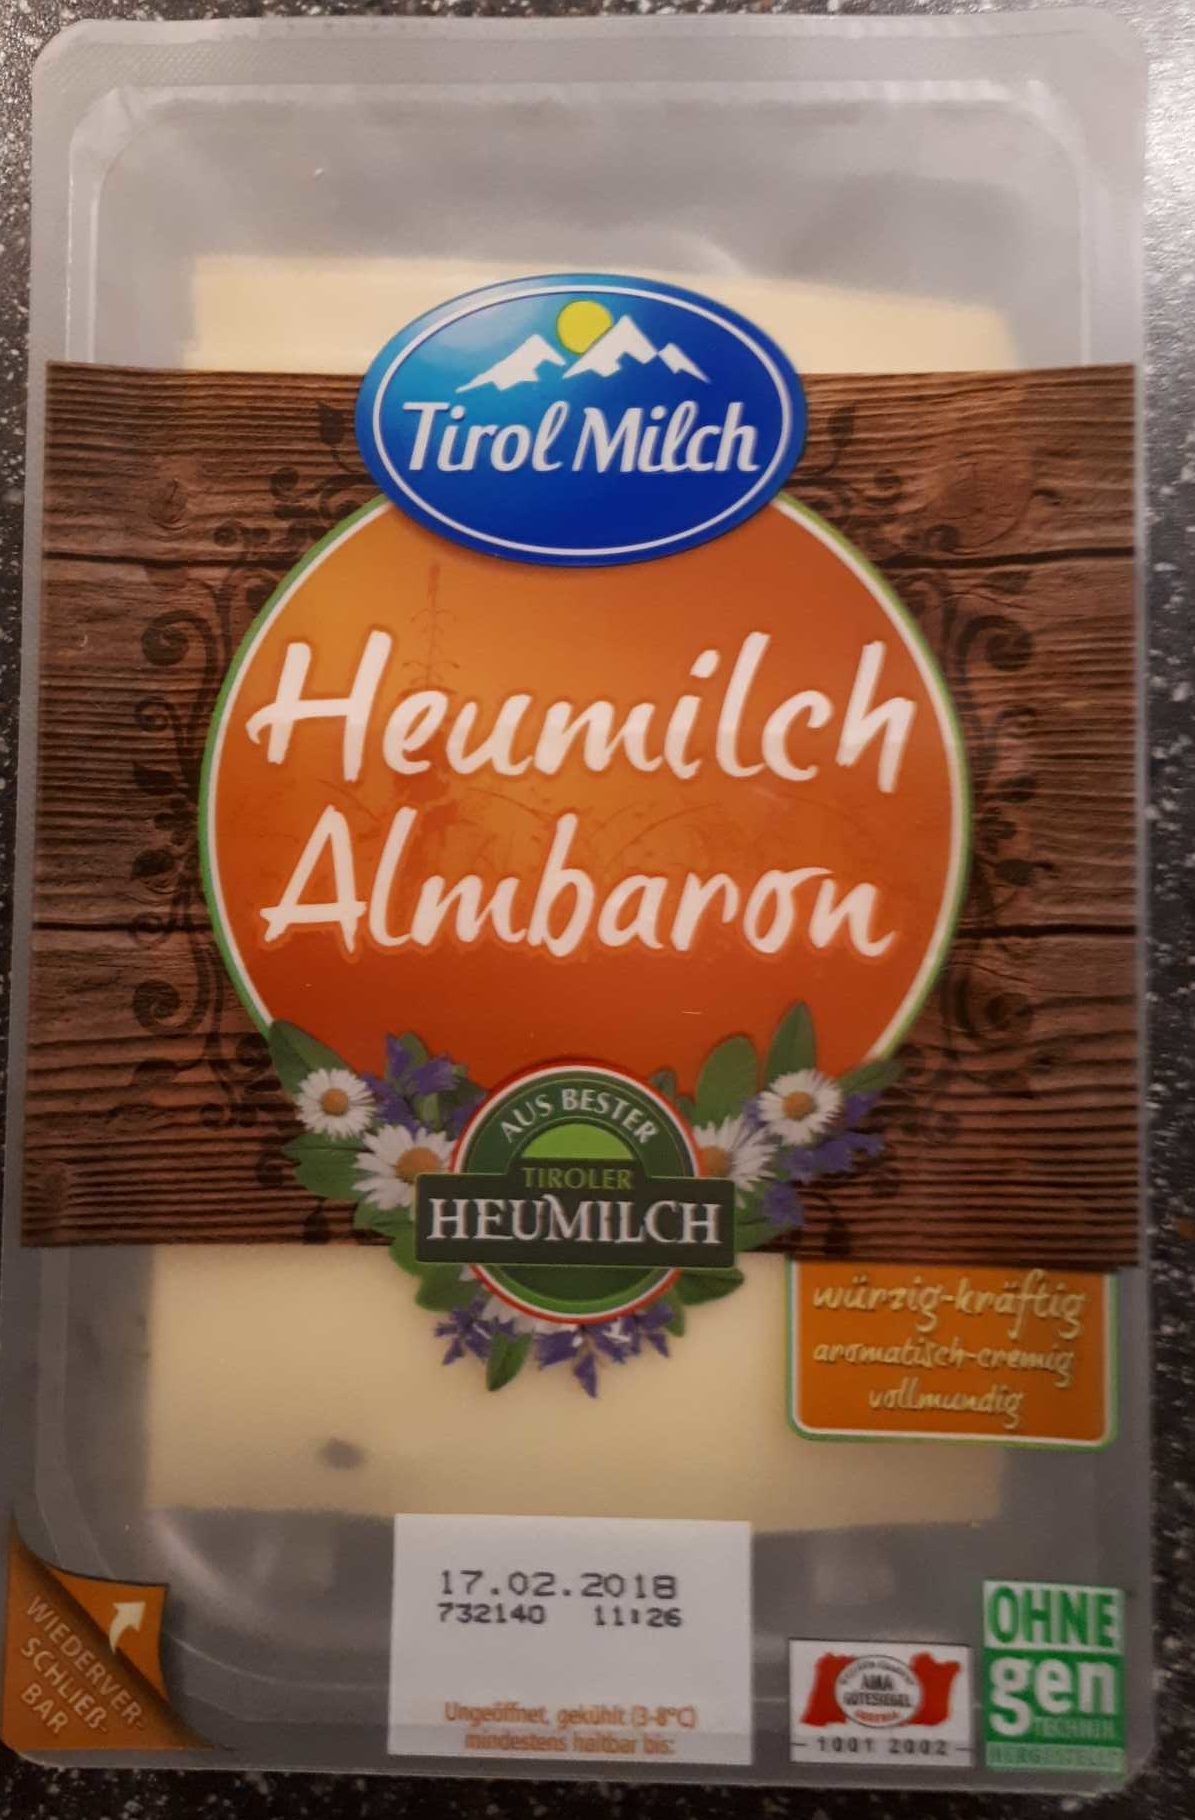 Heumilch Almbaron - Product - de